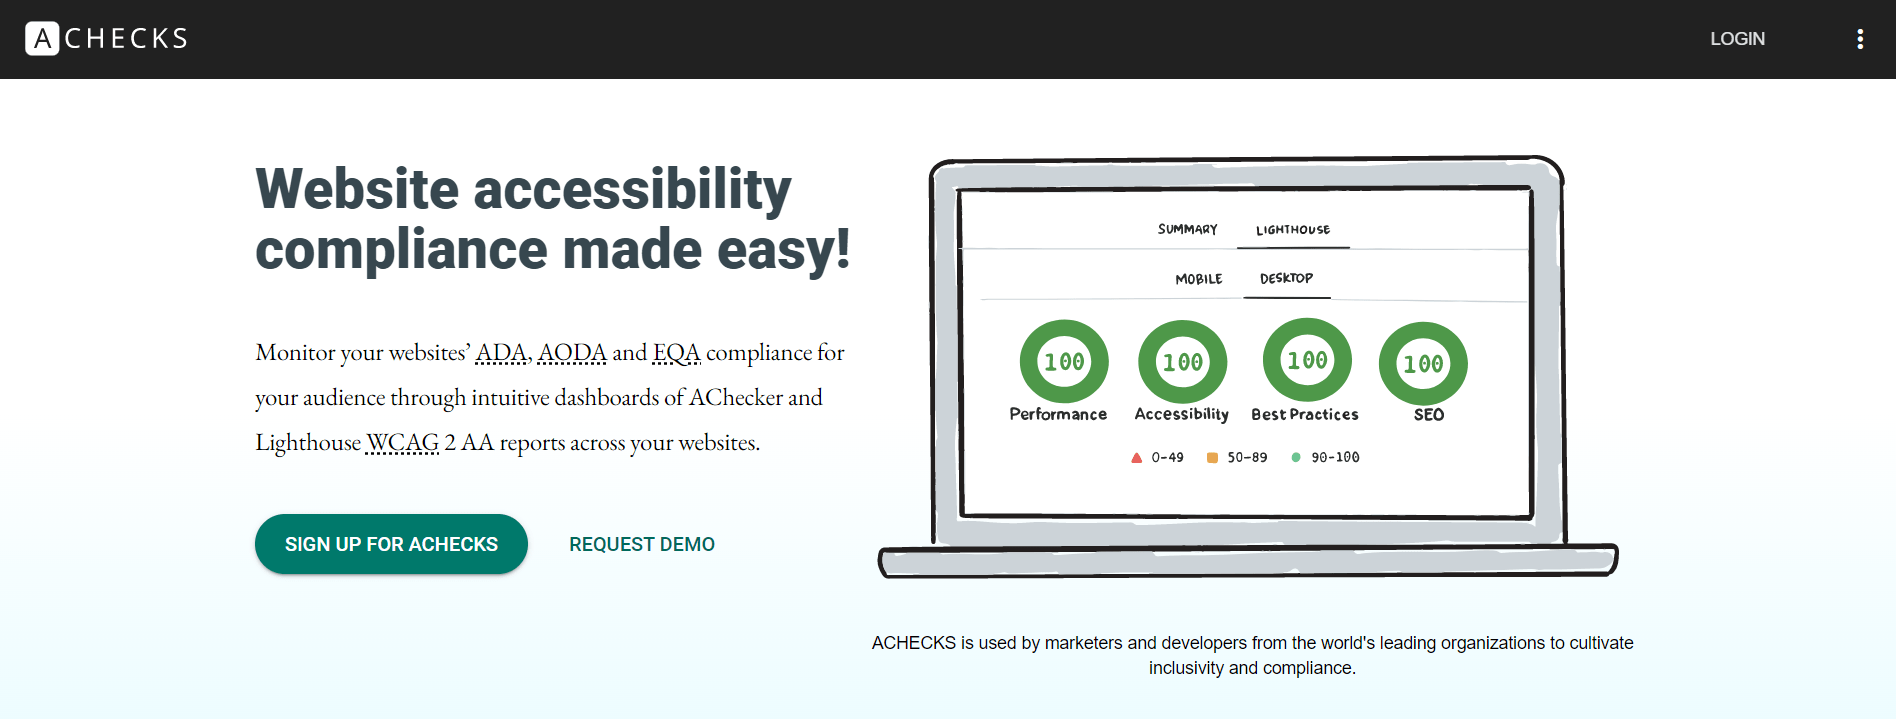 pfo-achecks-site-accessibility